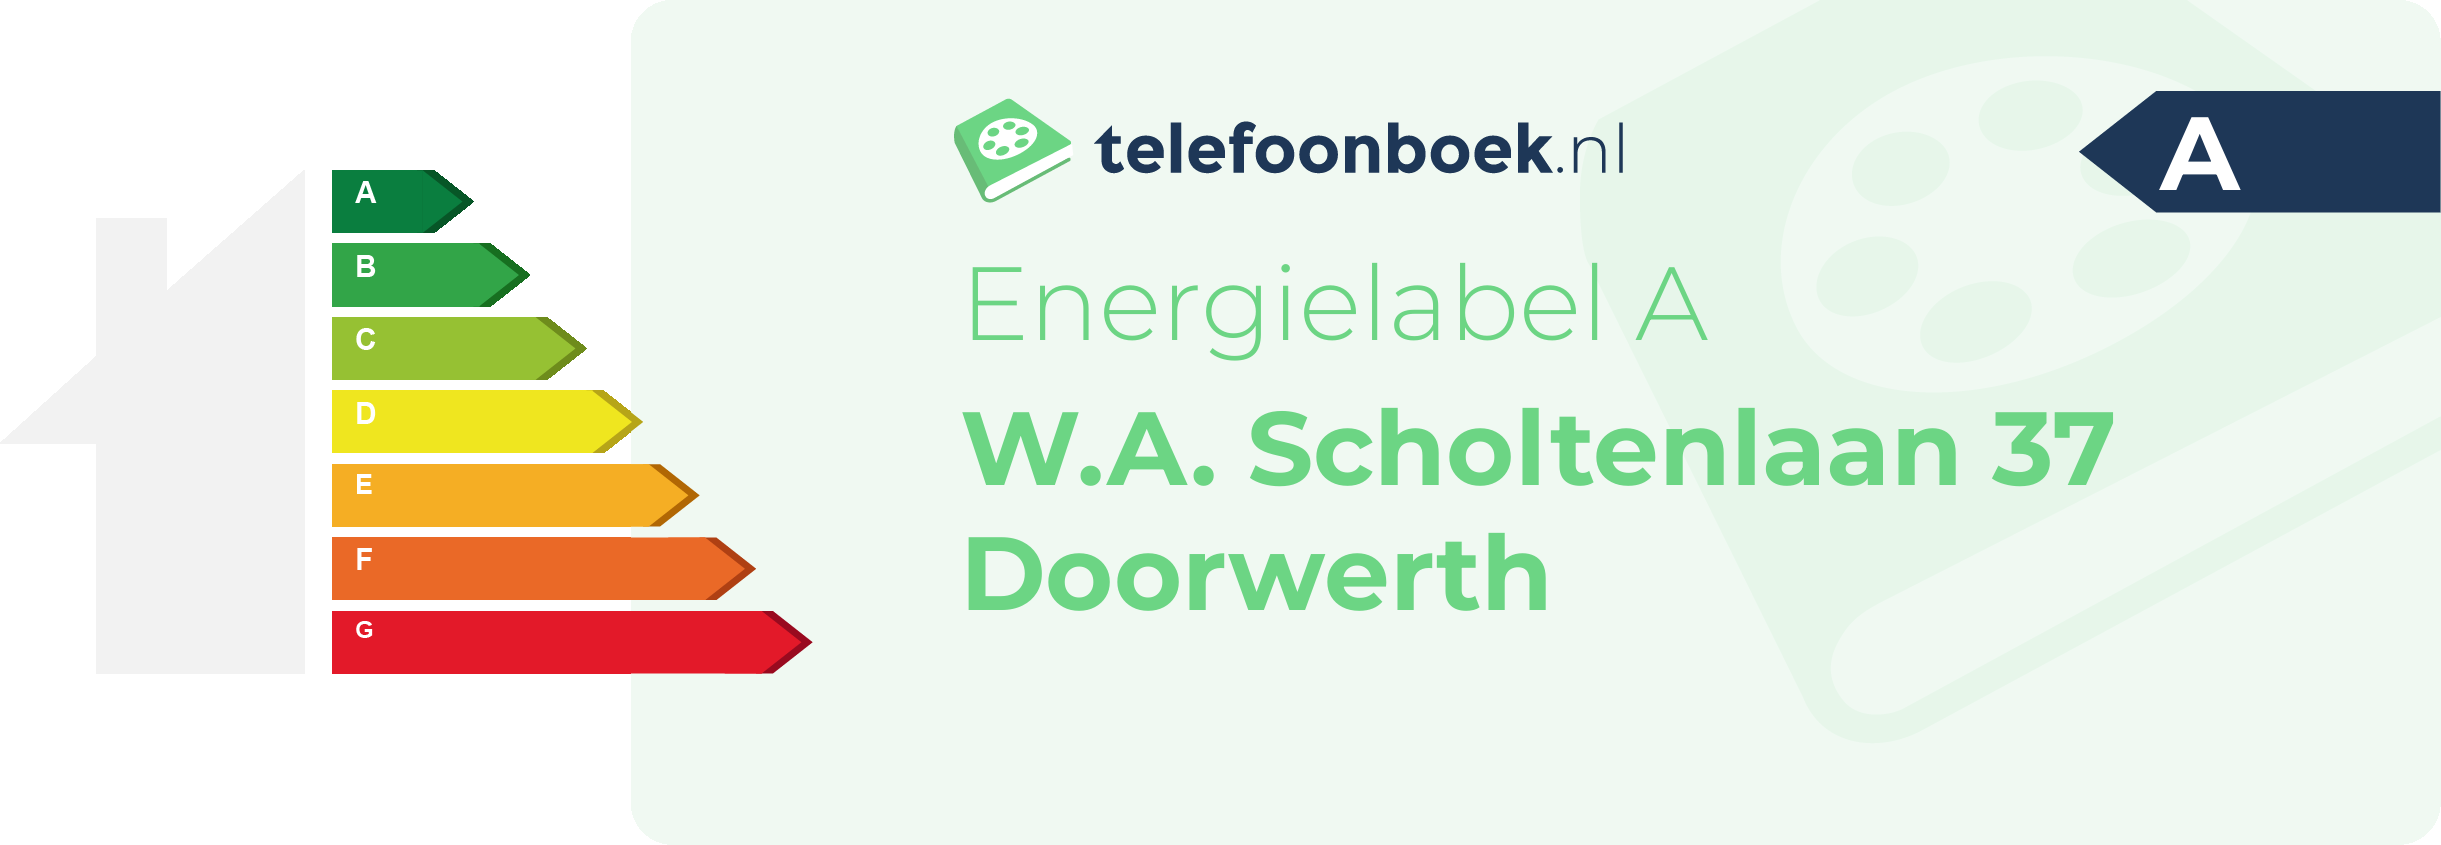 Energielabel W.A. Scholtenlaan 37 Doorwerth